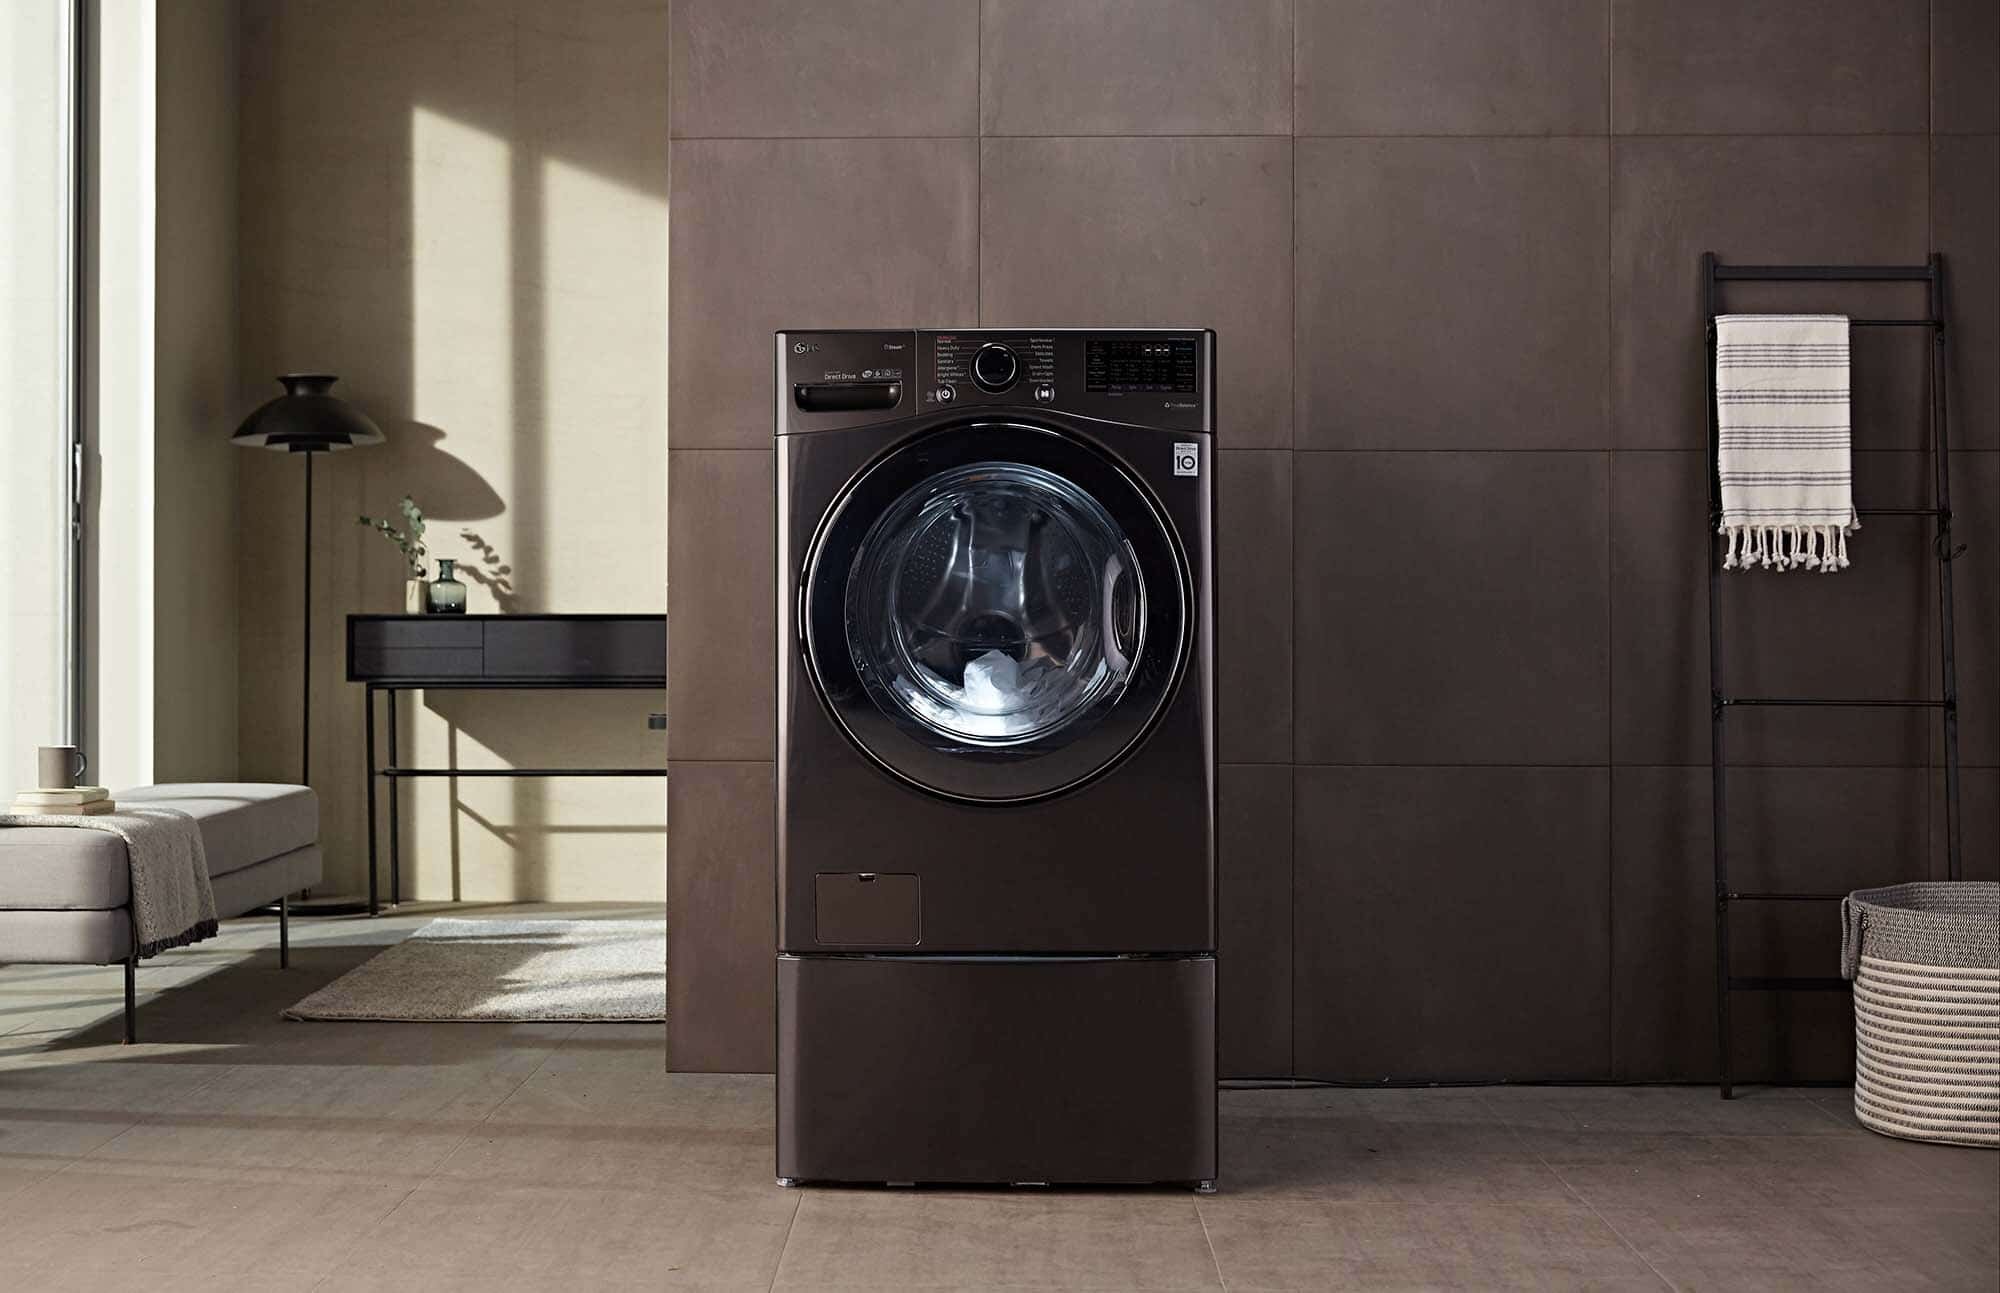 Kinh nghiệm mua máy giặt thương hiệu LG chất lượng phù hợp